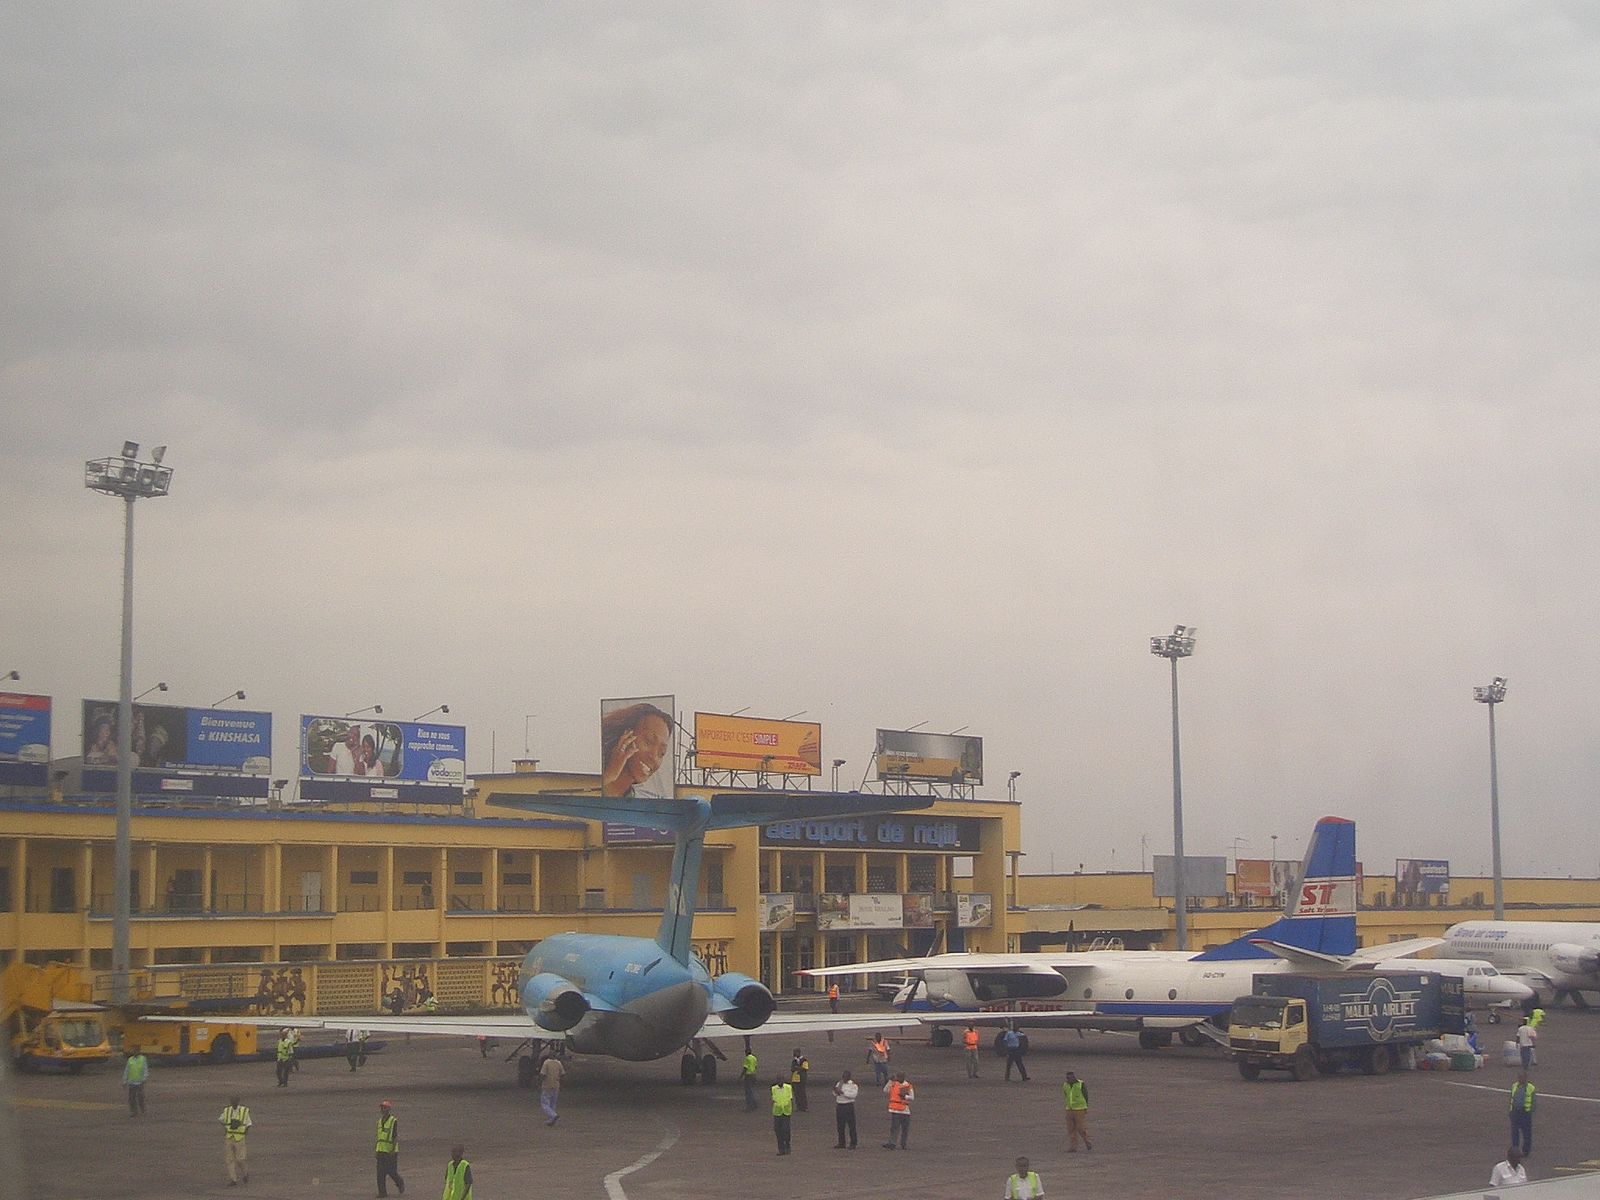 Kinshasa Airport consists of two passenger terminals.